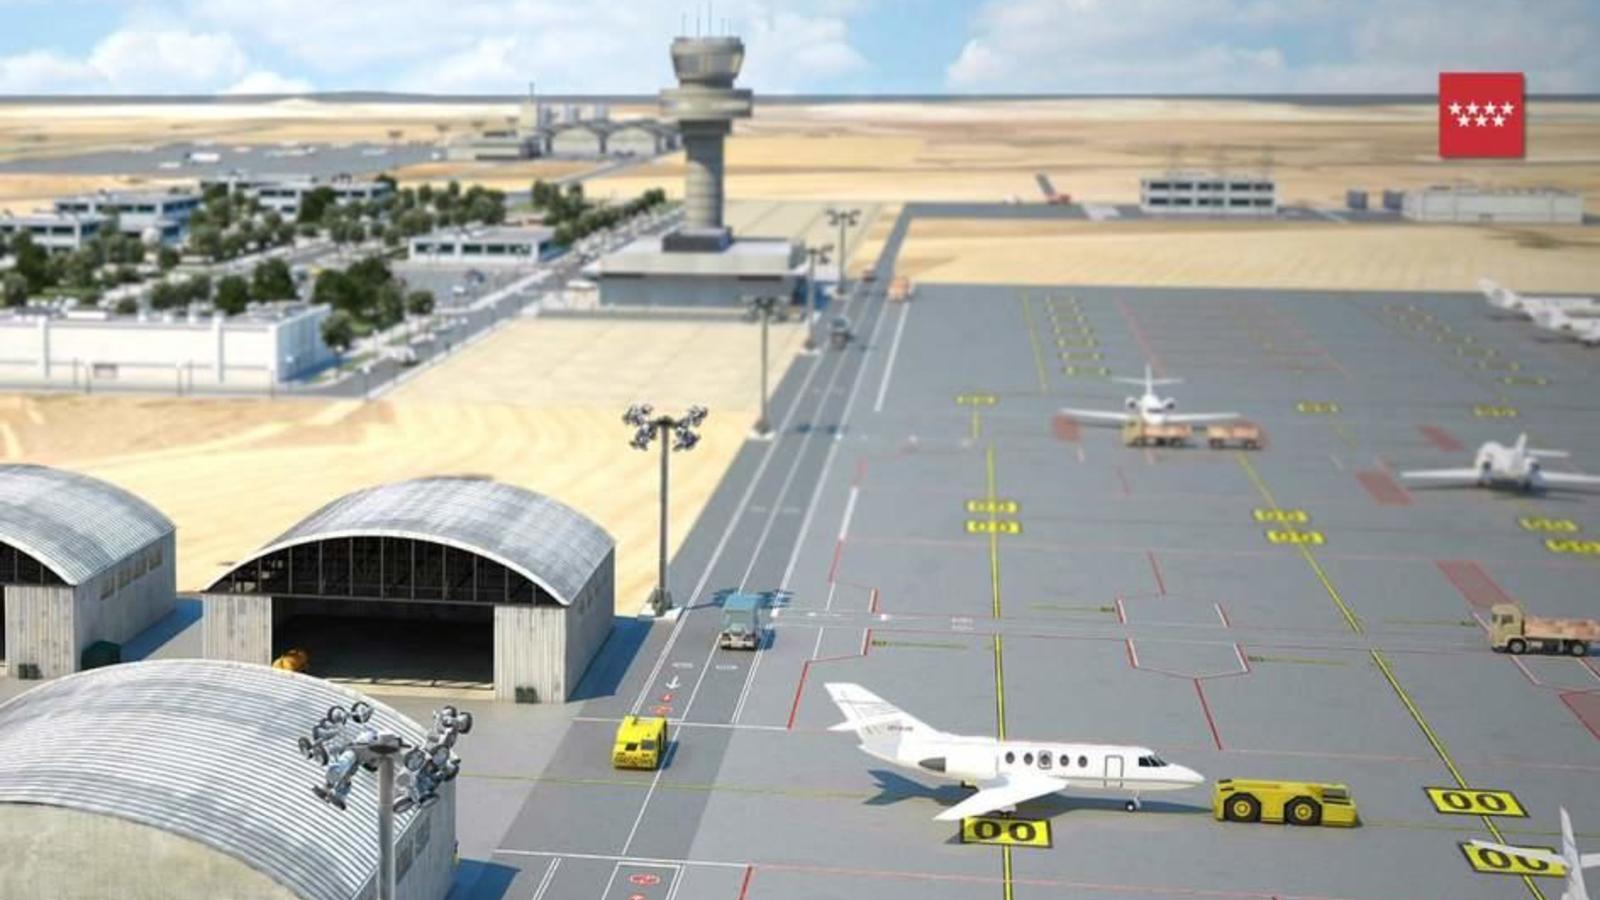 Aeropuertos: El nuevo aeropuerto privado de Madrid, todo un pelotazo para condes y duques